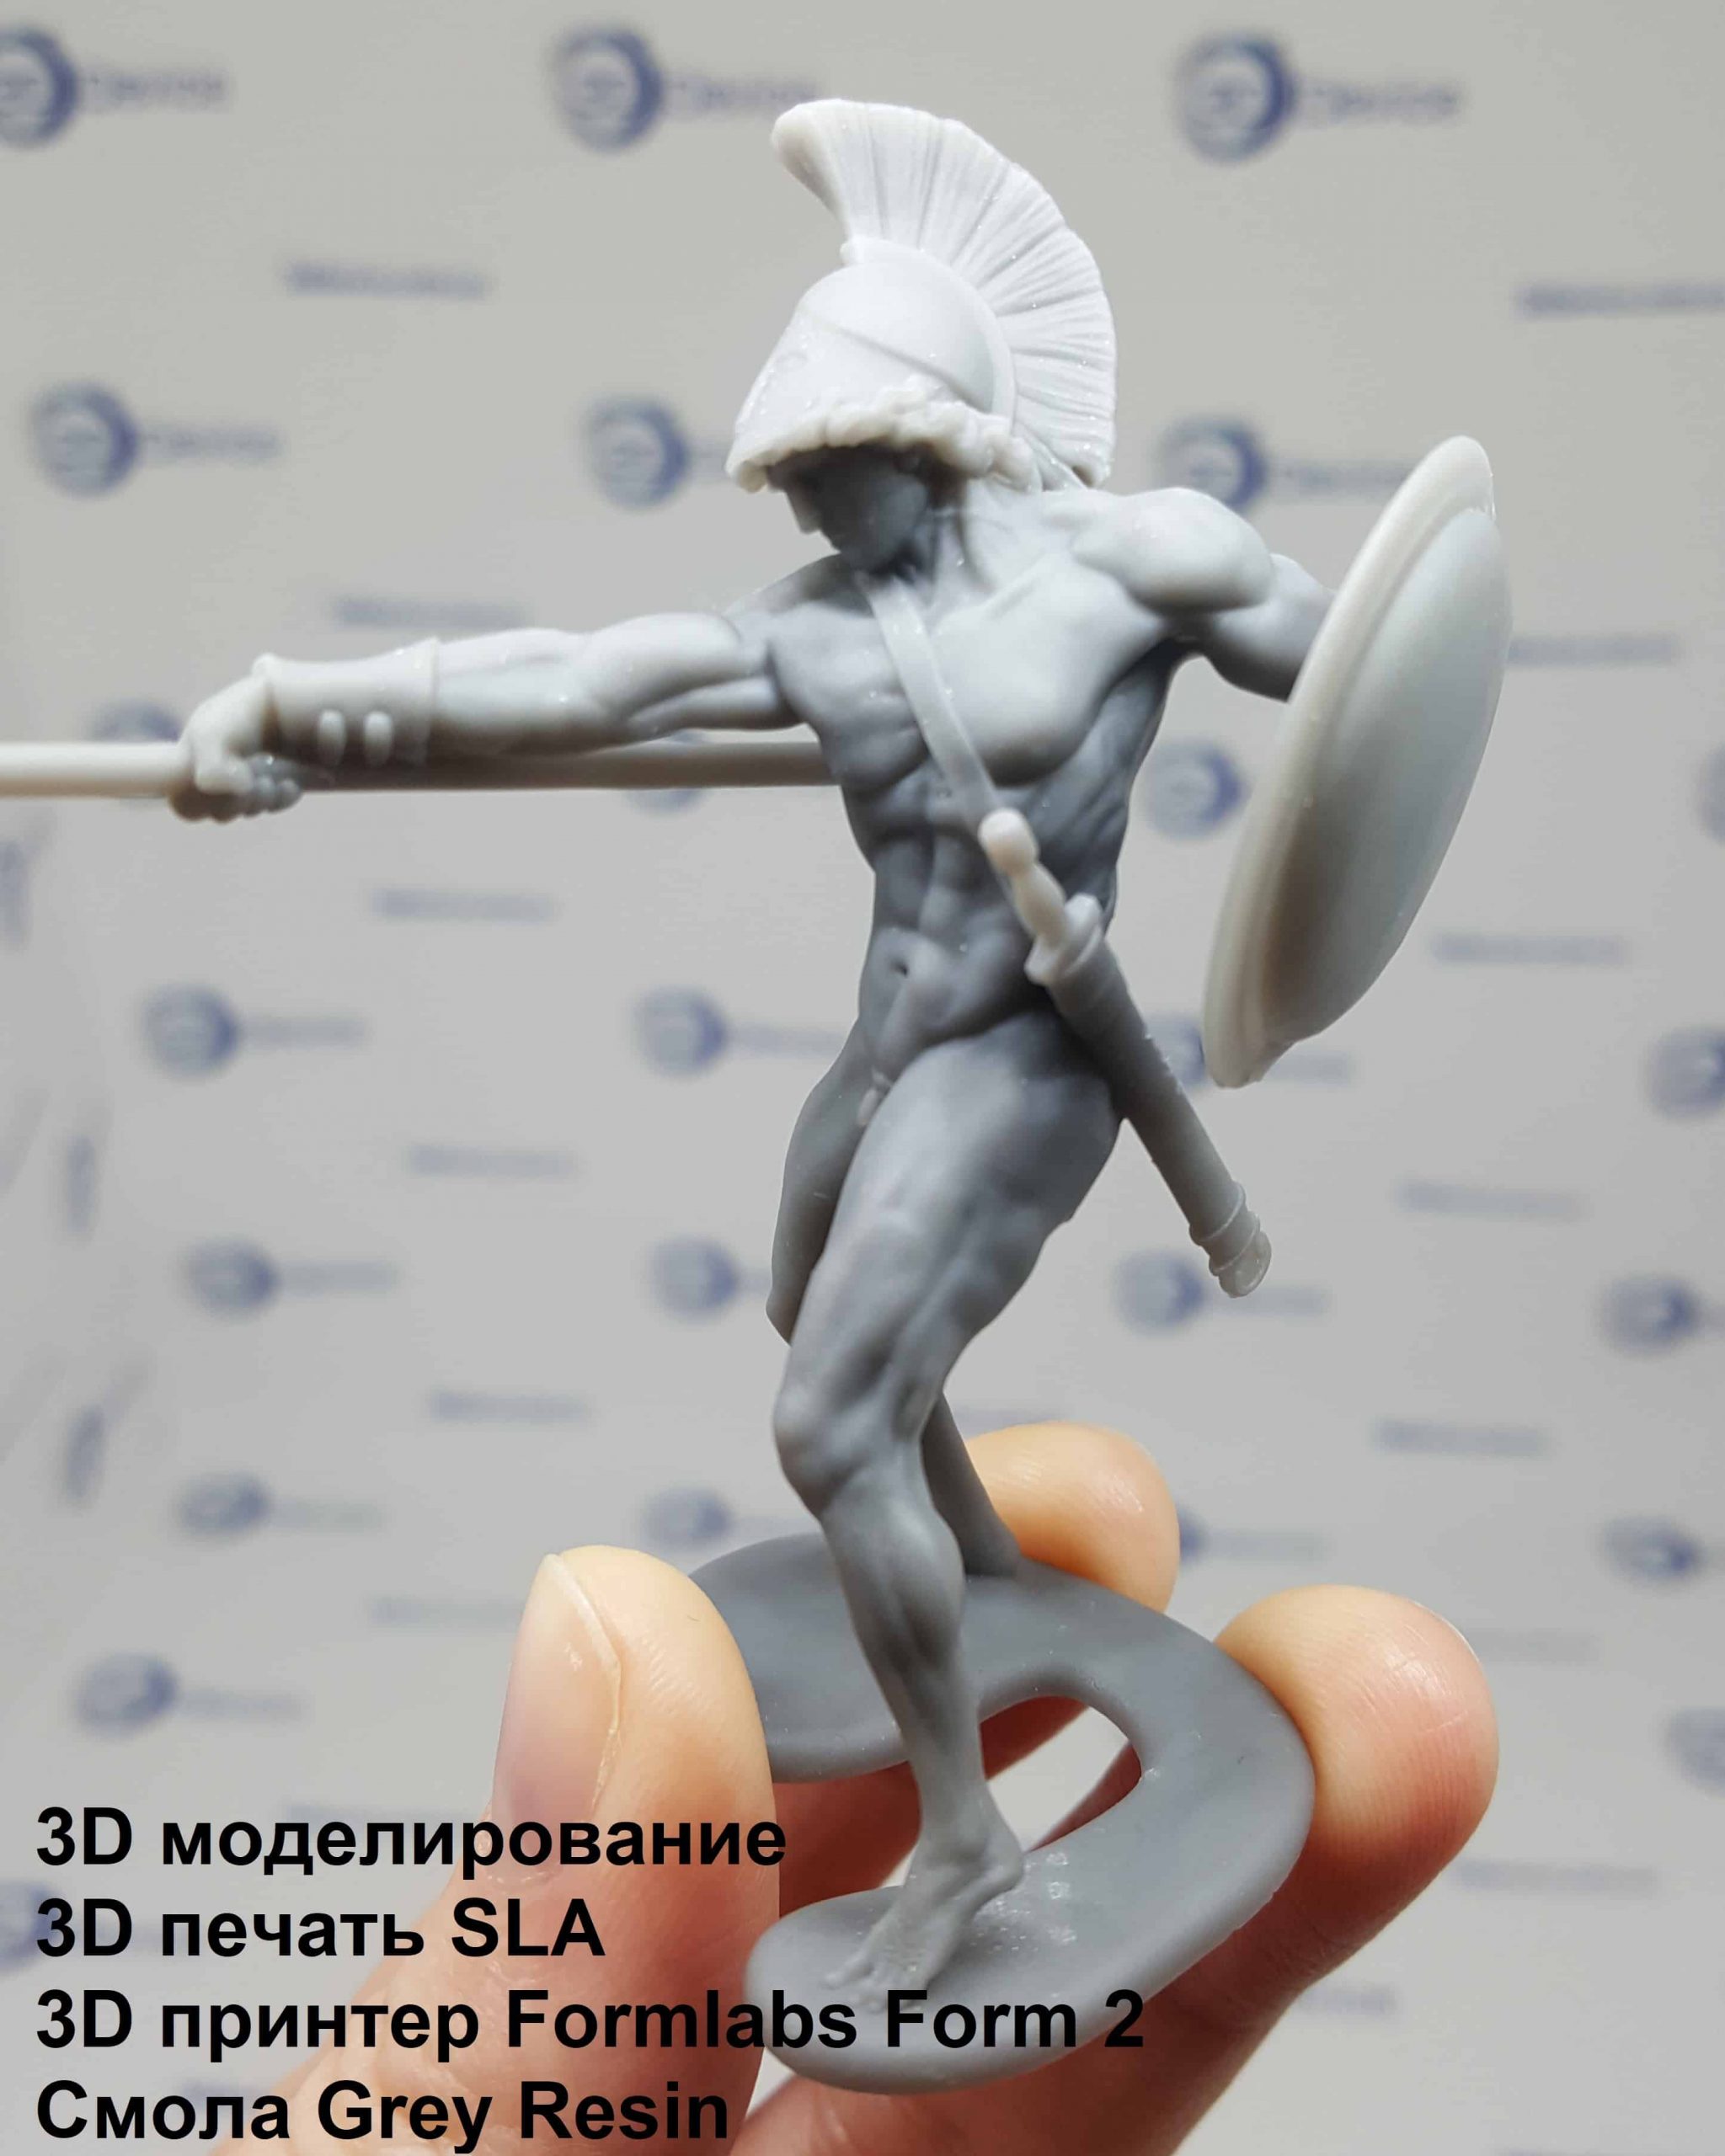 Воин 3D печать SLA Formlabs Grey Resin толщина слоя 25 мкм